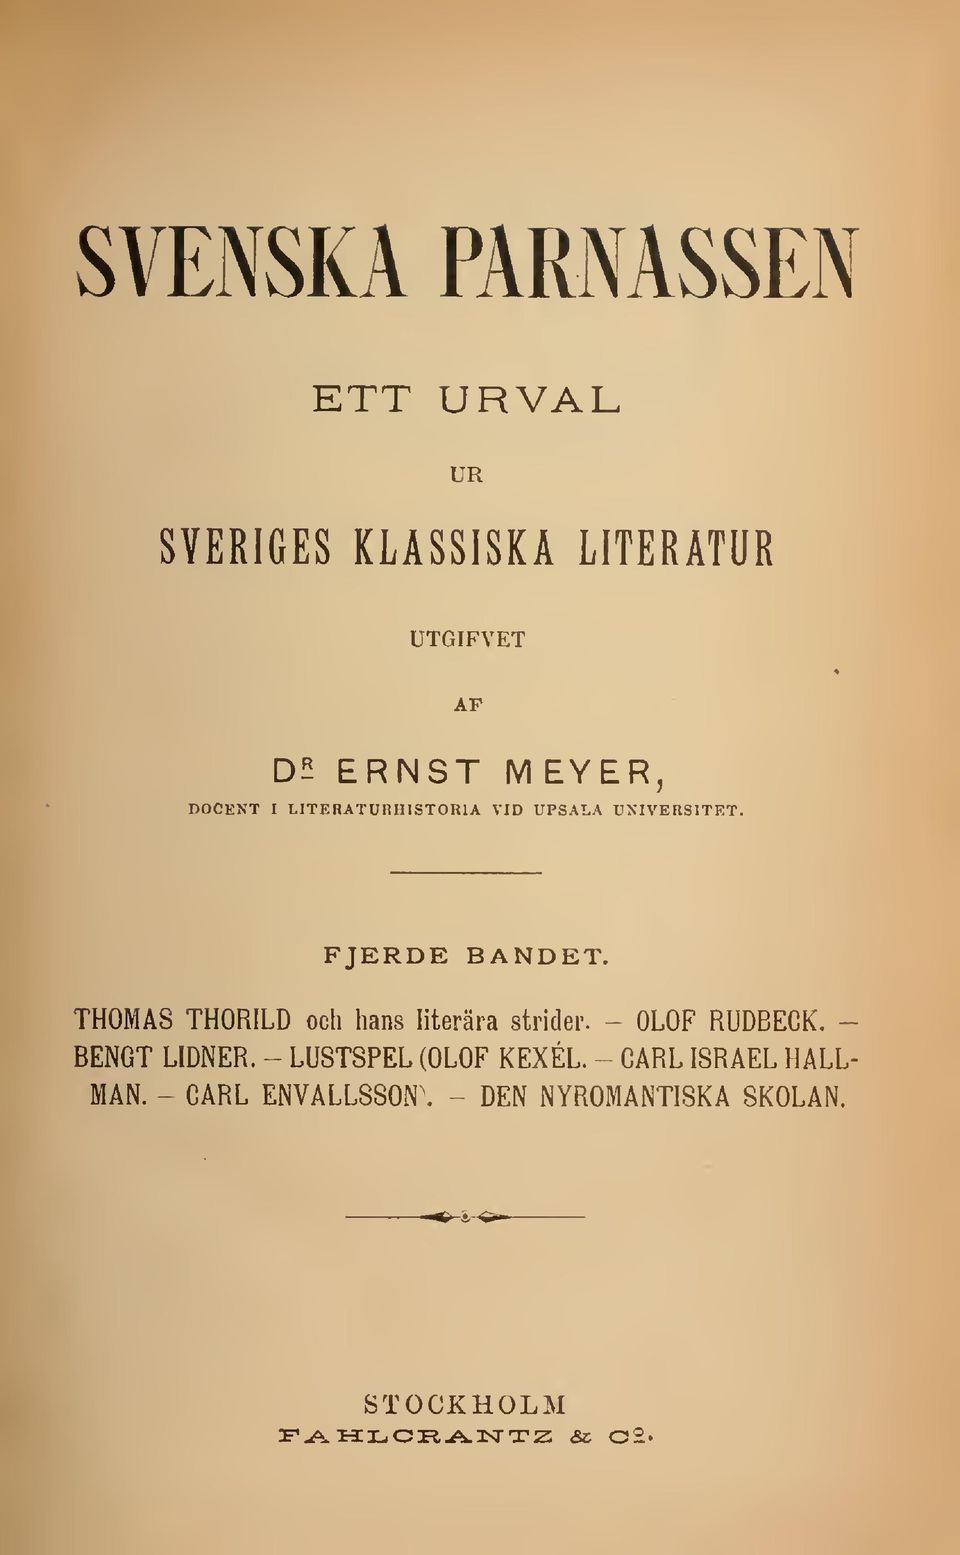 THOMAS THORILD och hans literära strider. ~ OLOF RUDBECK. - BENGT LIDNER.